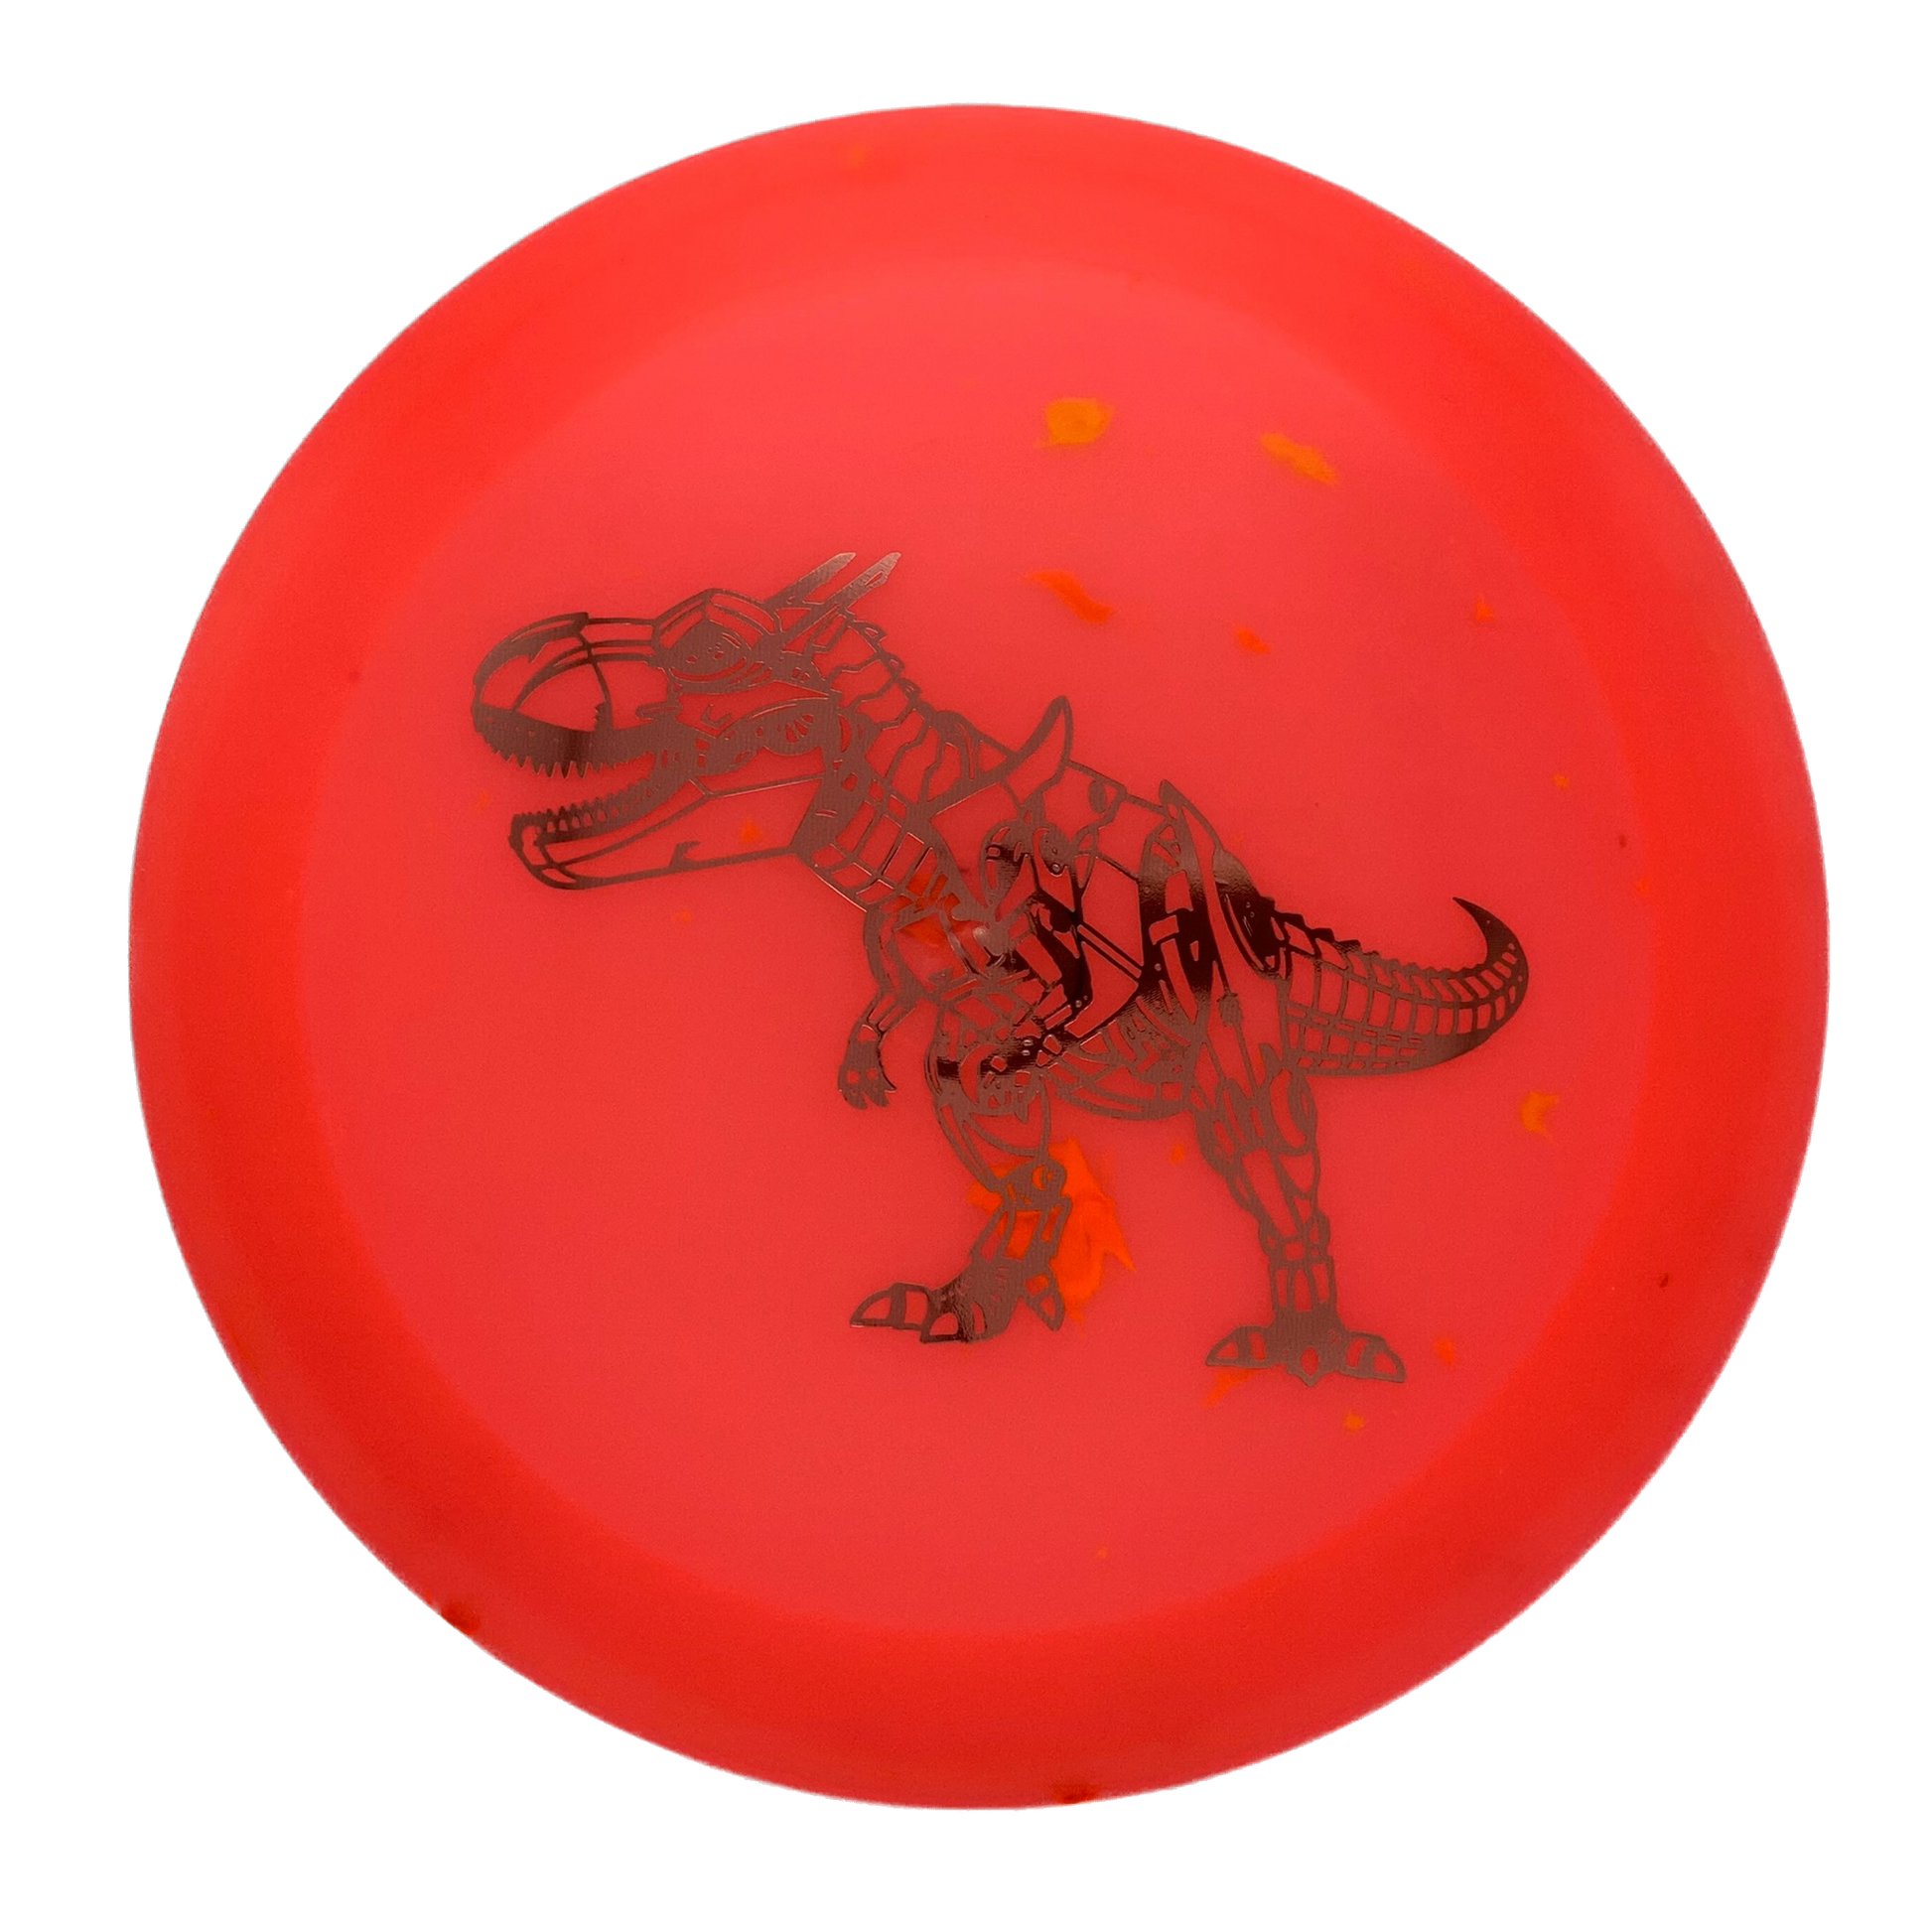 Dino Discs Tyrannosaurus Rex - Astro Discs TX - Houston Disc Golf